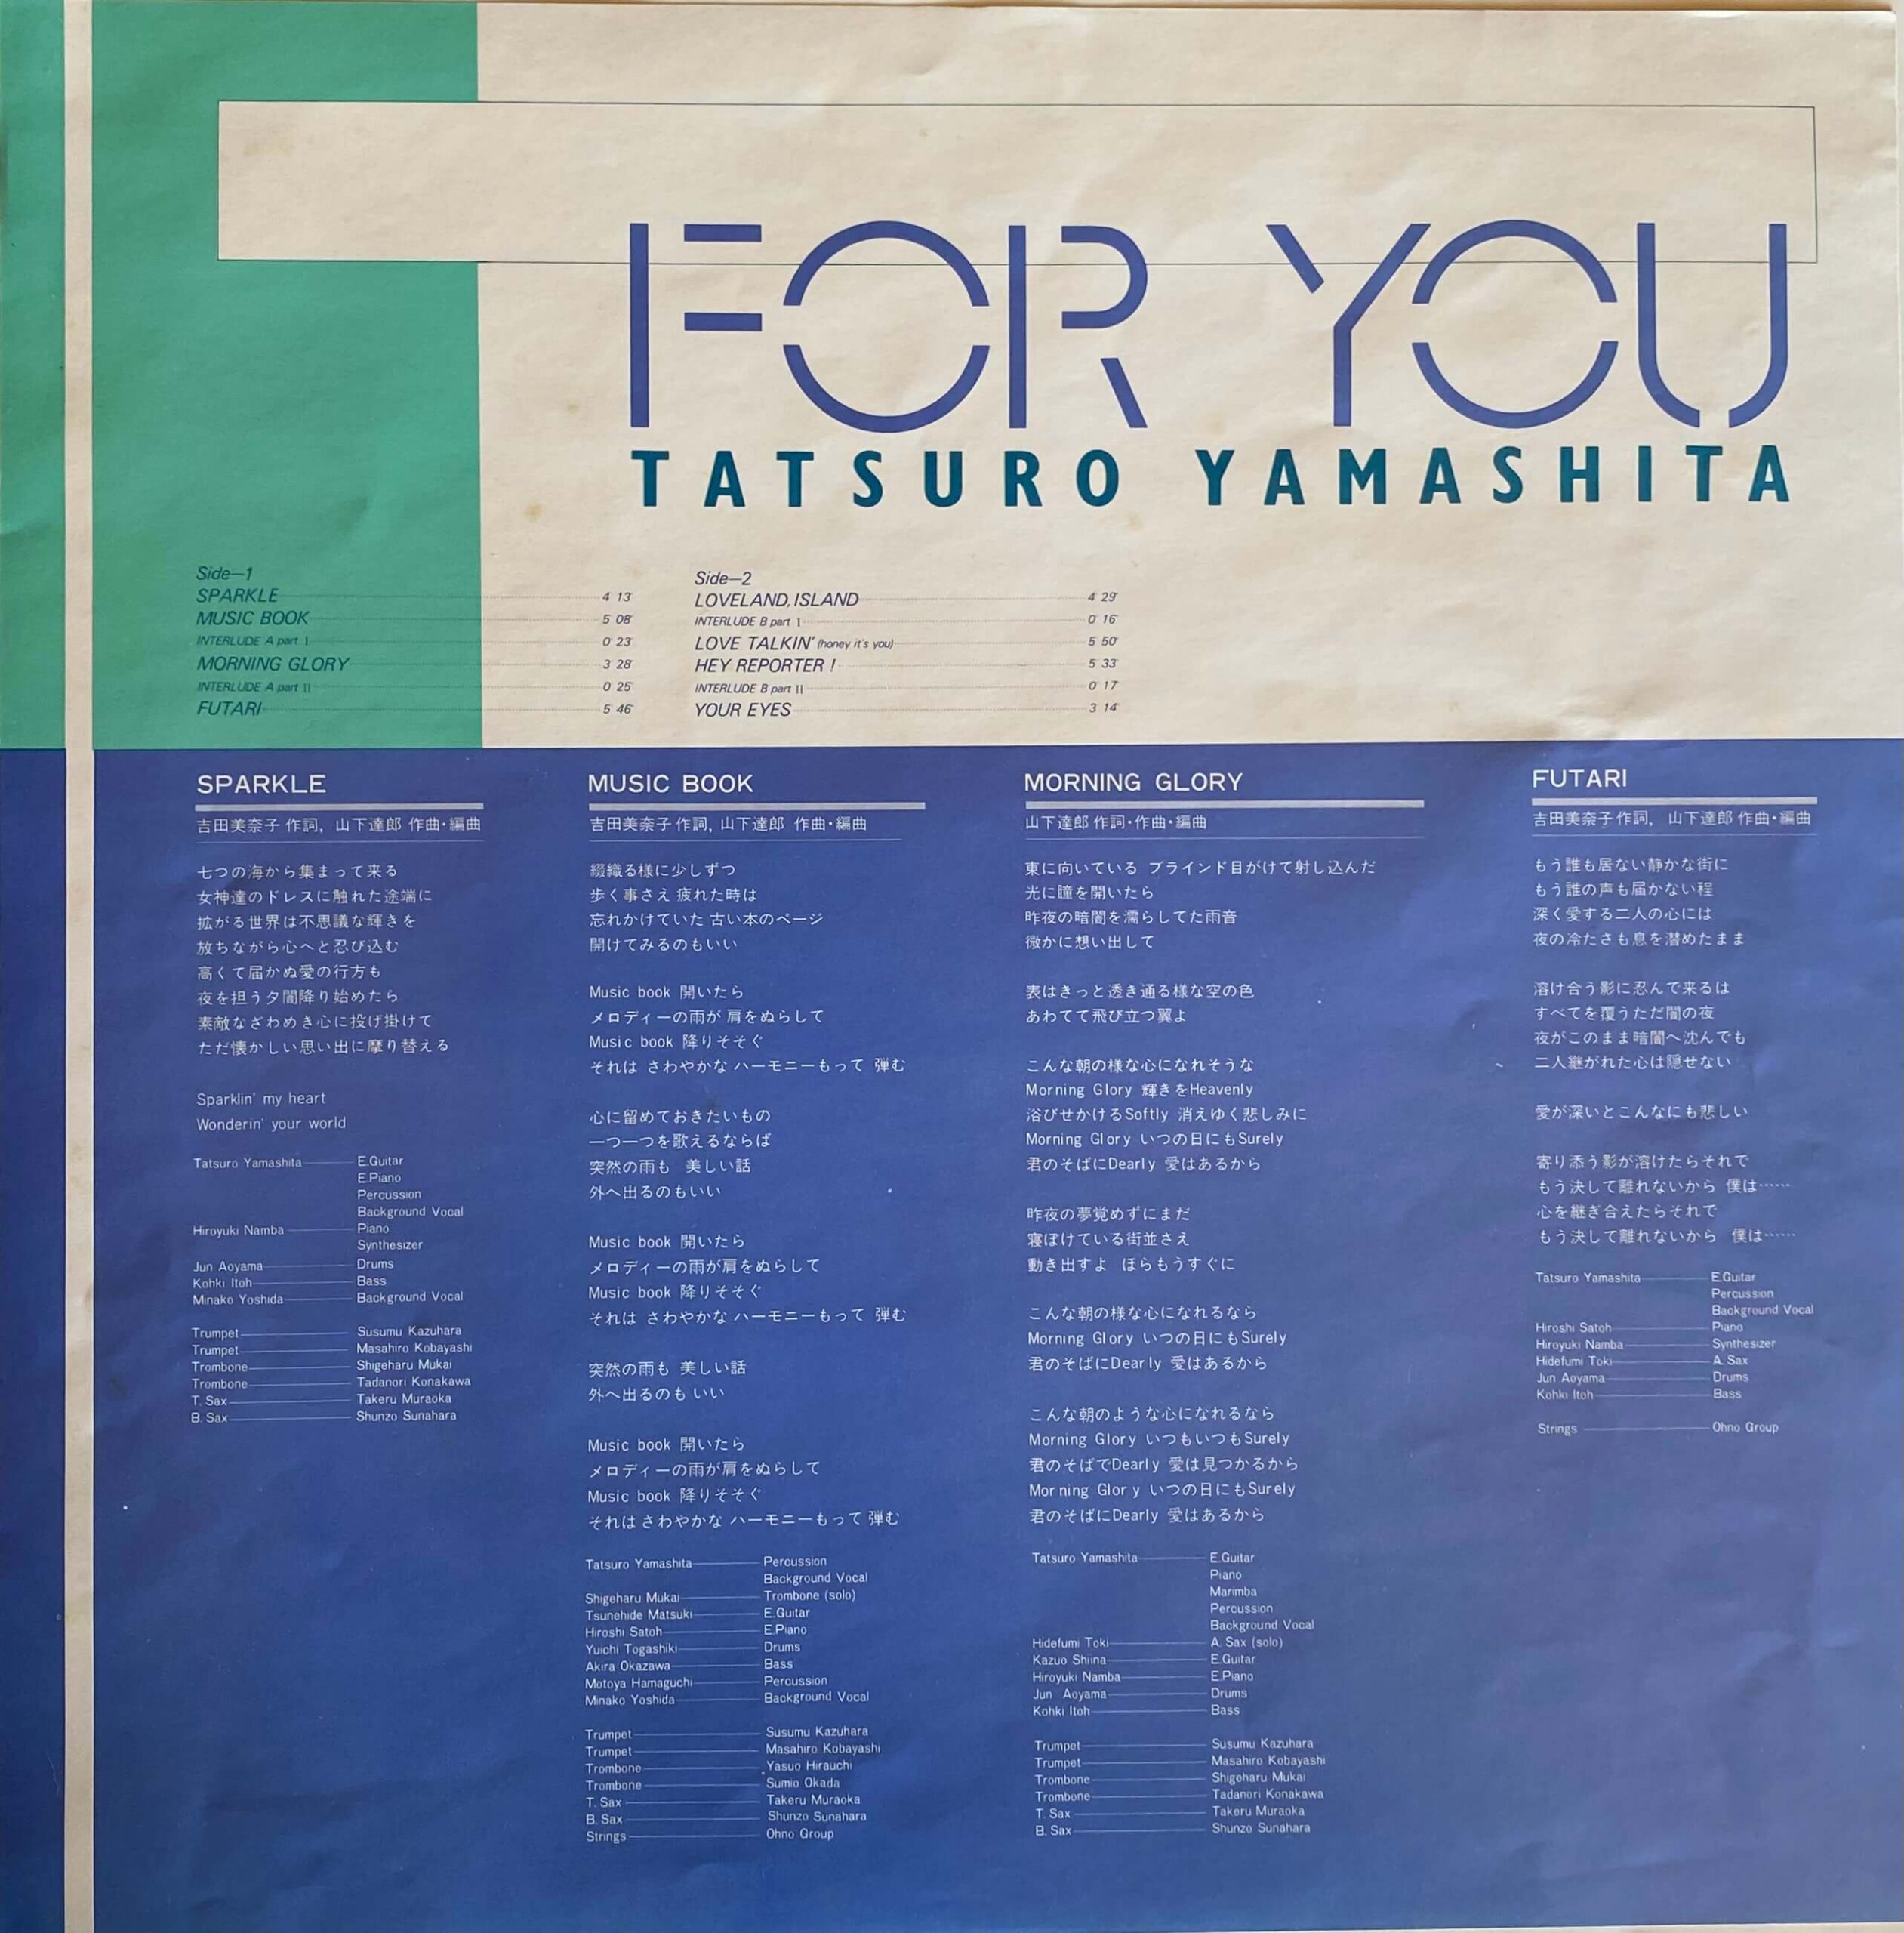 山下達郎 / FOR YOU オリジナル LP city pop 和モノ